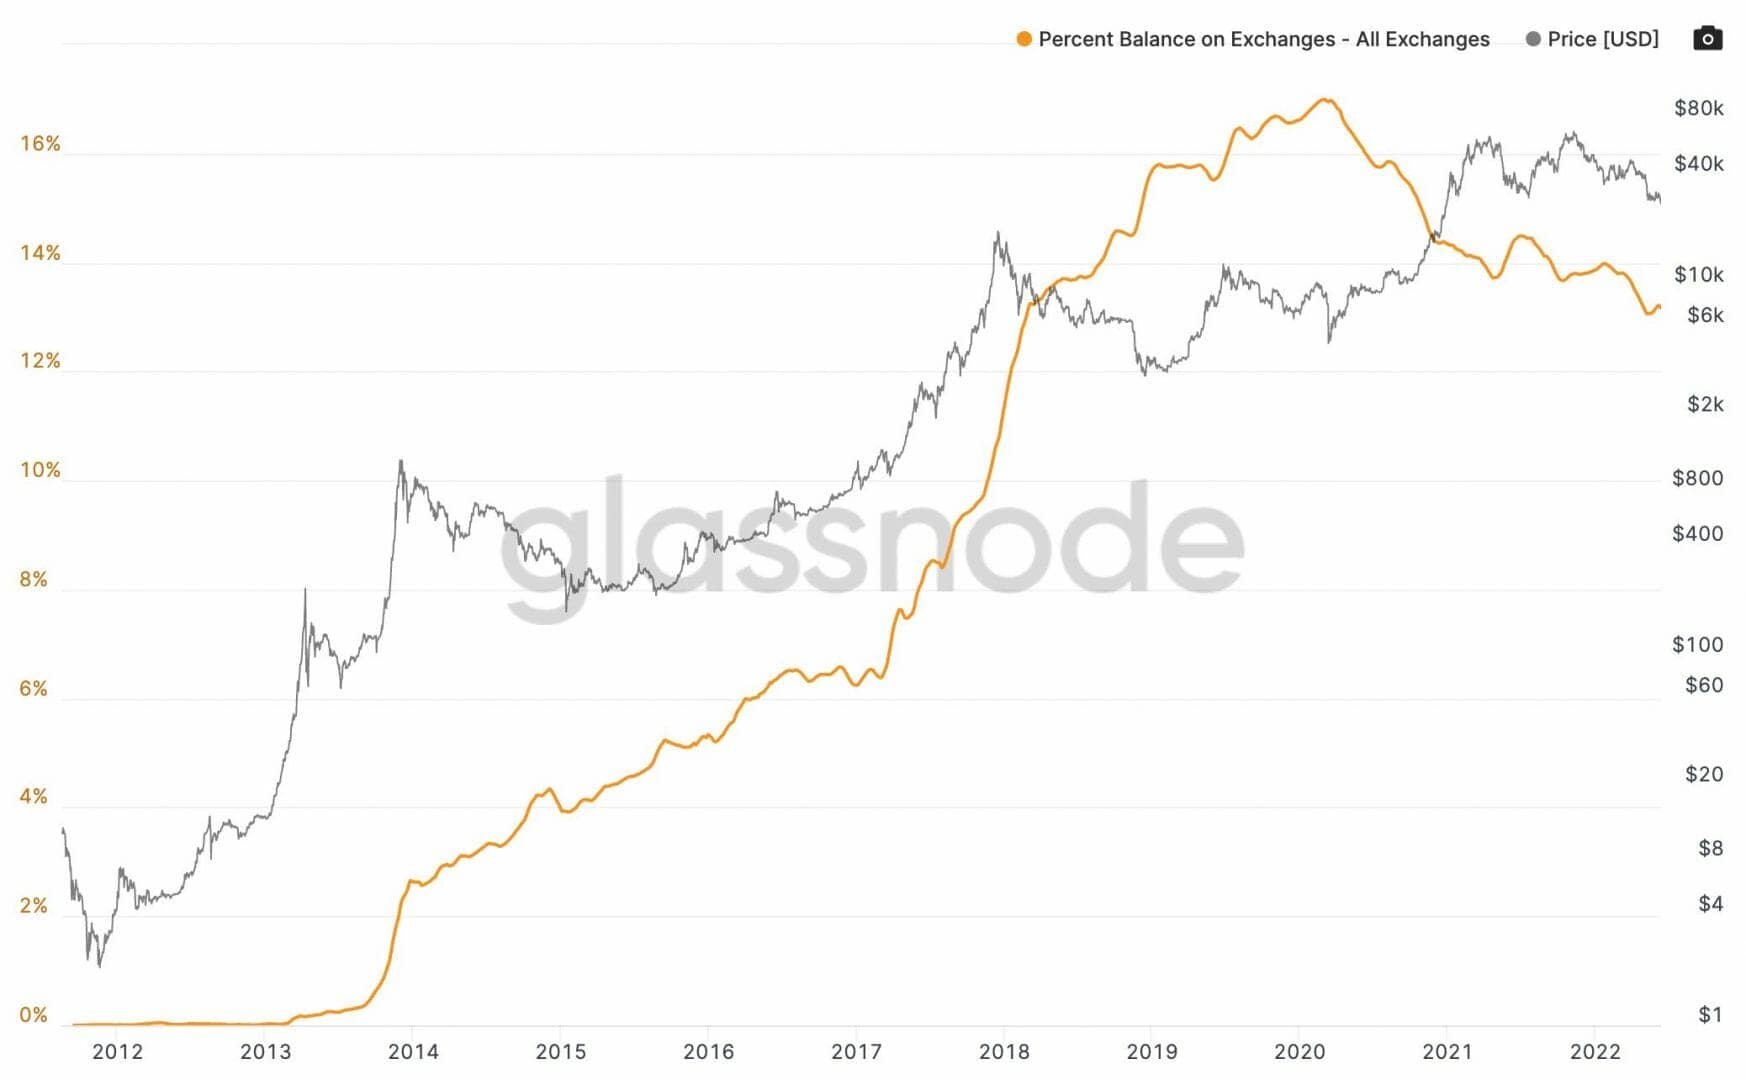 La tendance baissière continue au niveau de la quantité de Bitcoin disponible sur les plateformes d'échanges.